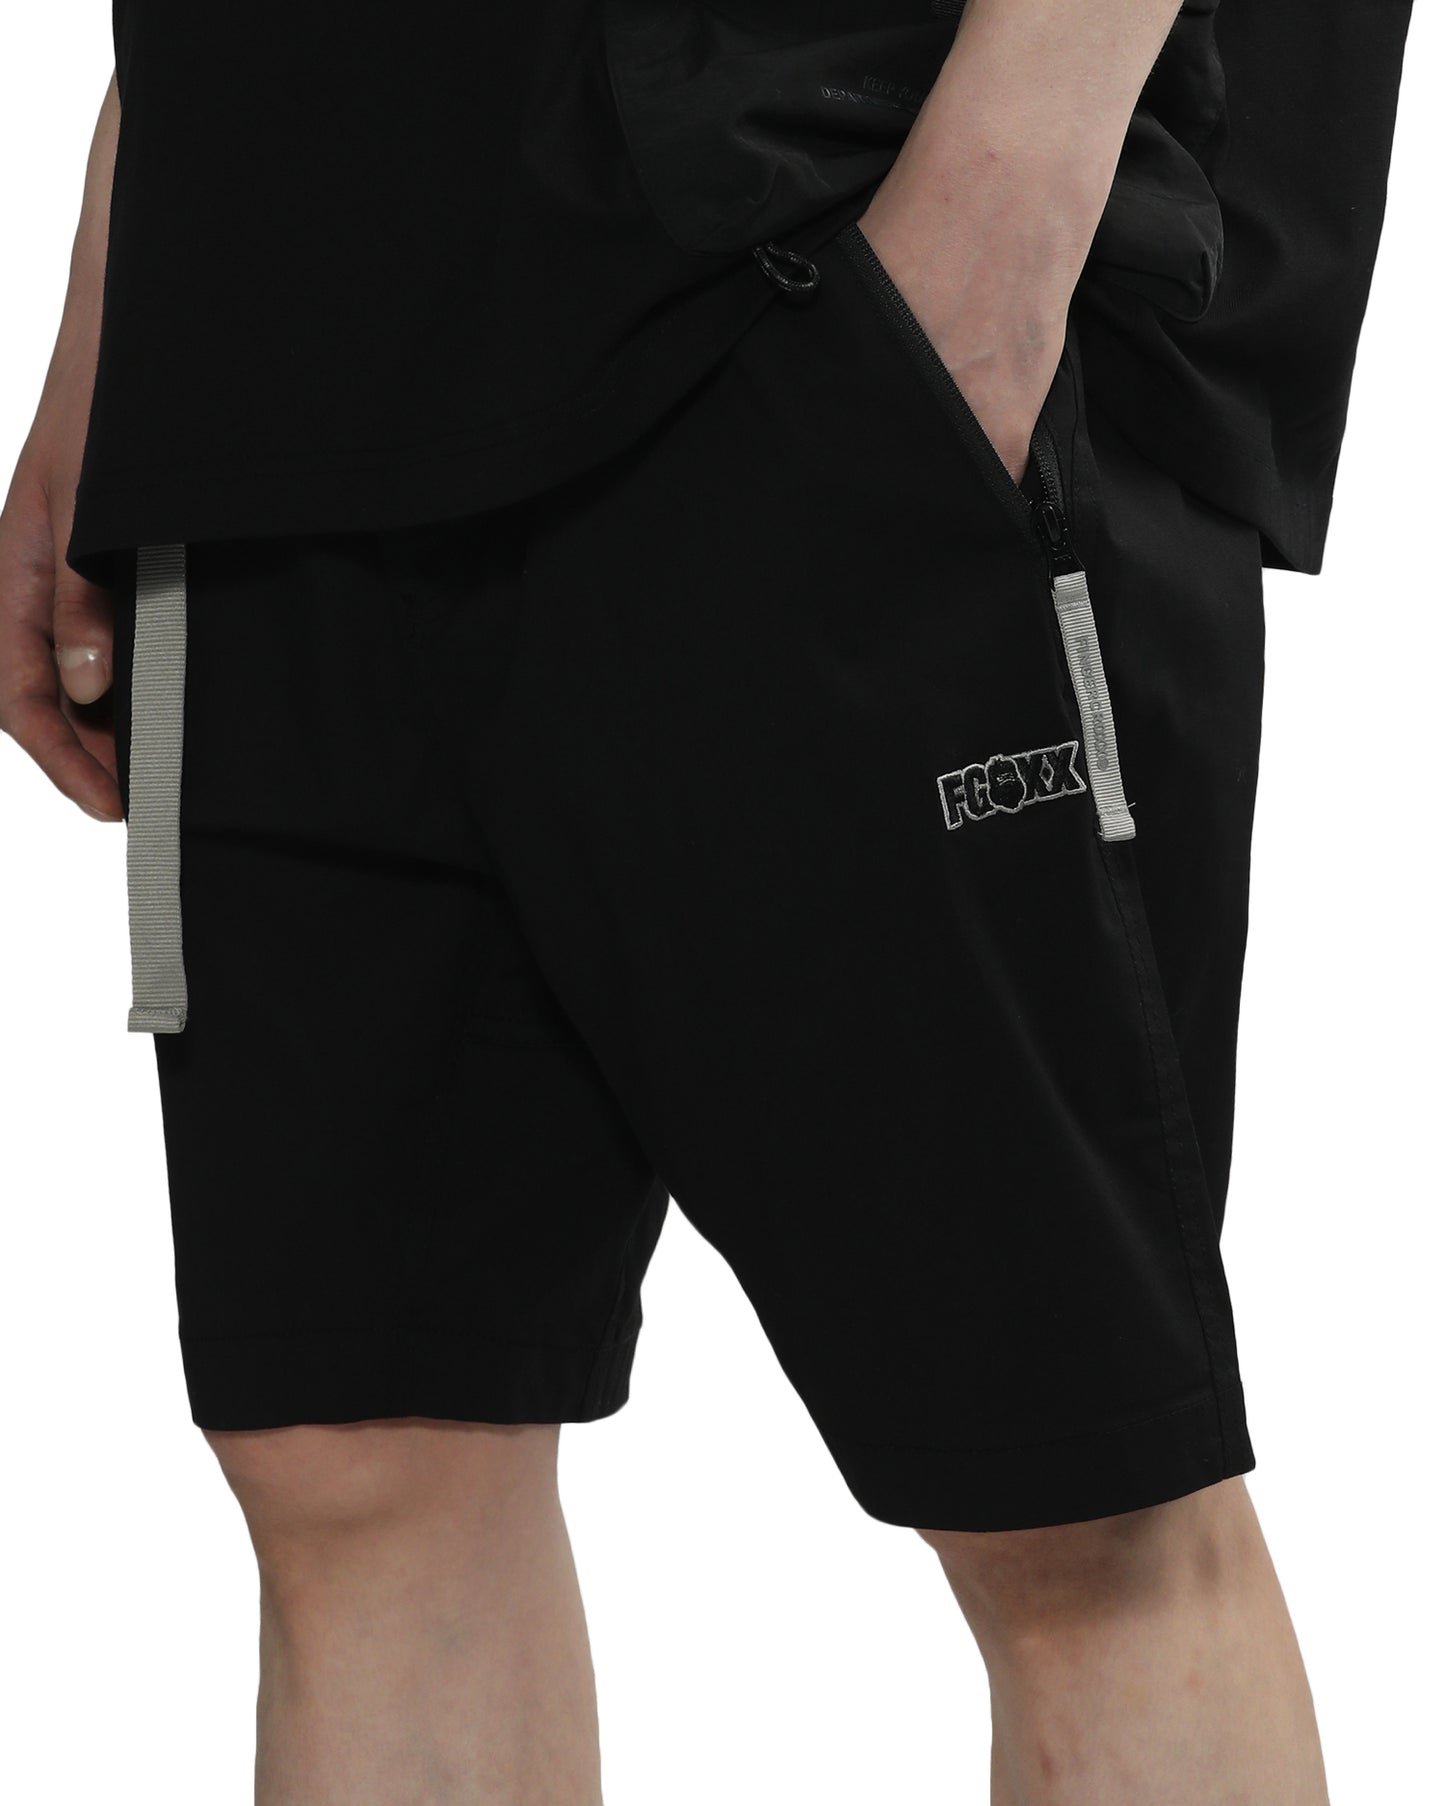 Men's - Belted Shorts in Black